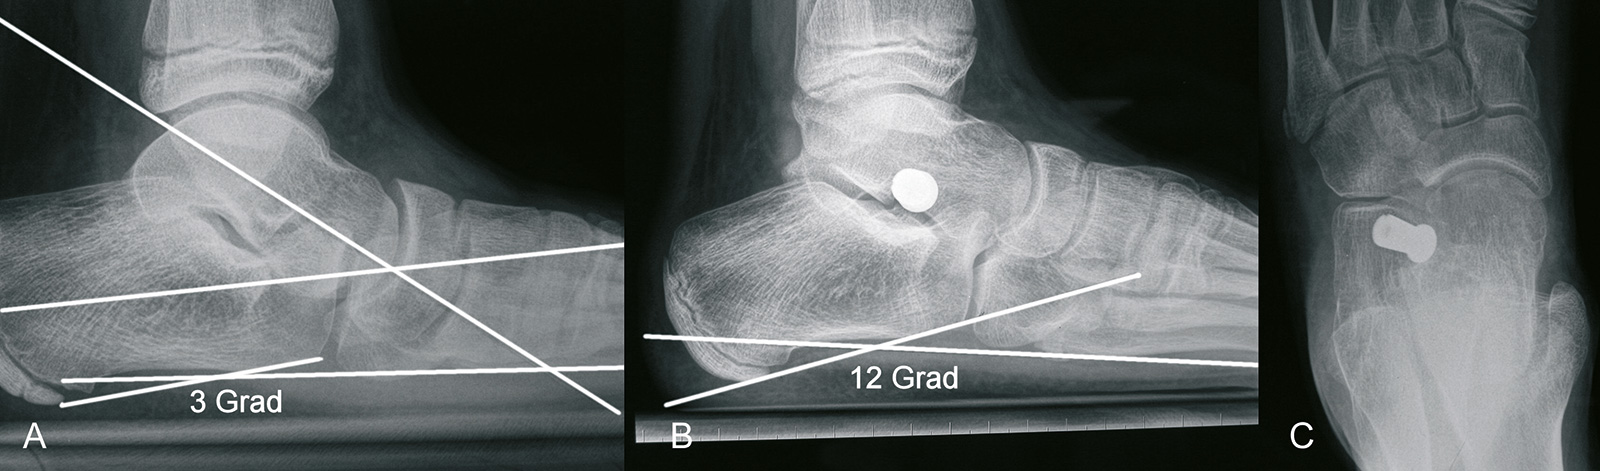 Abb. 4-59: Korrekur eines Knicksenkfußes (A) mit einem Kalix Implantat (B-C)